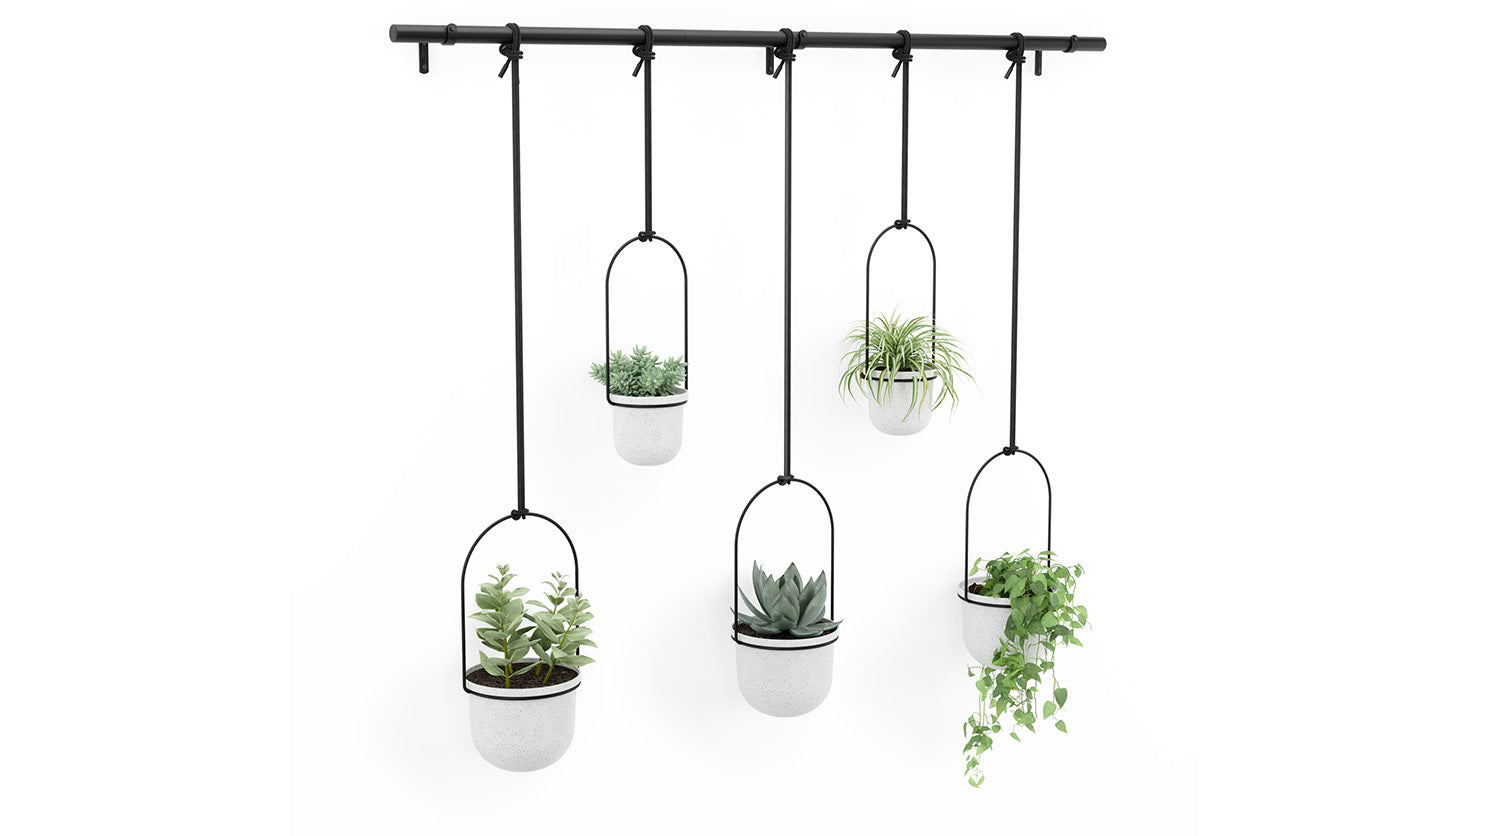 triflora 5 hanging planter